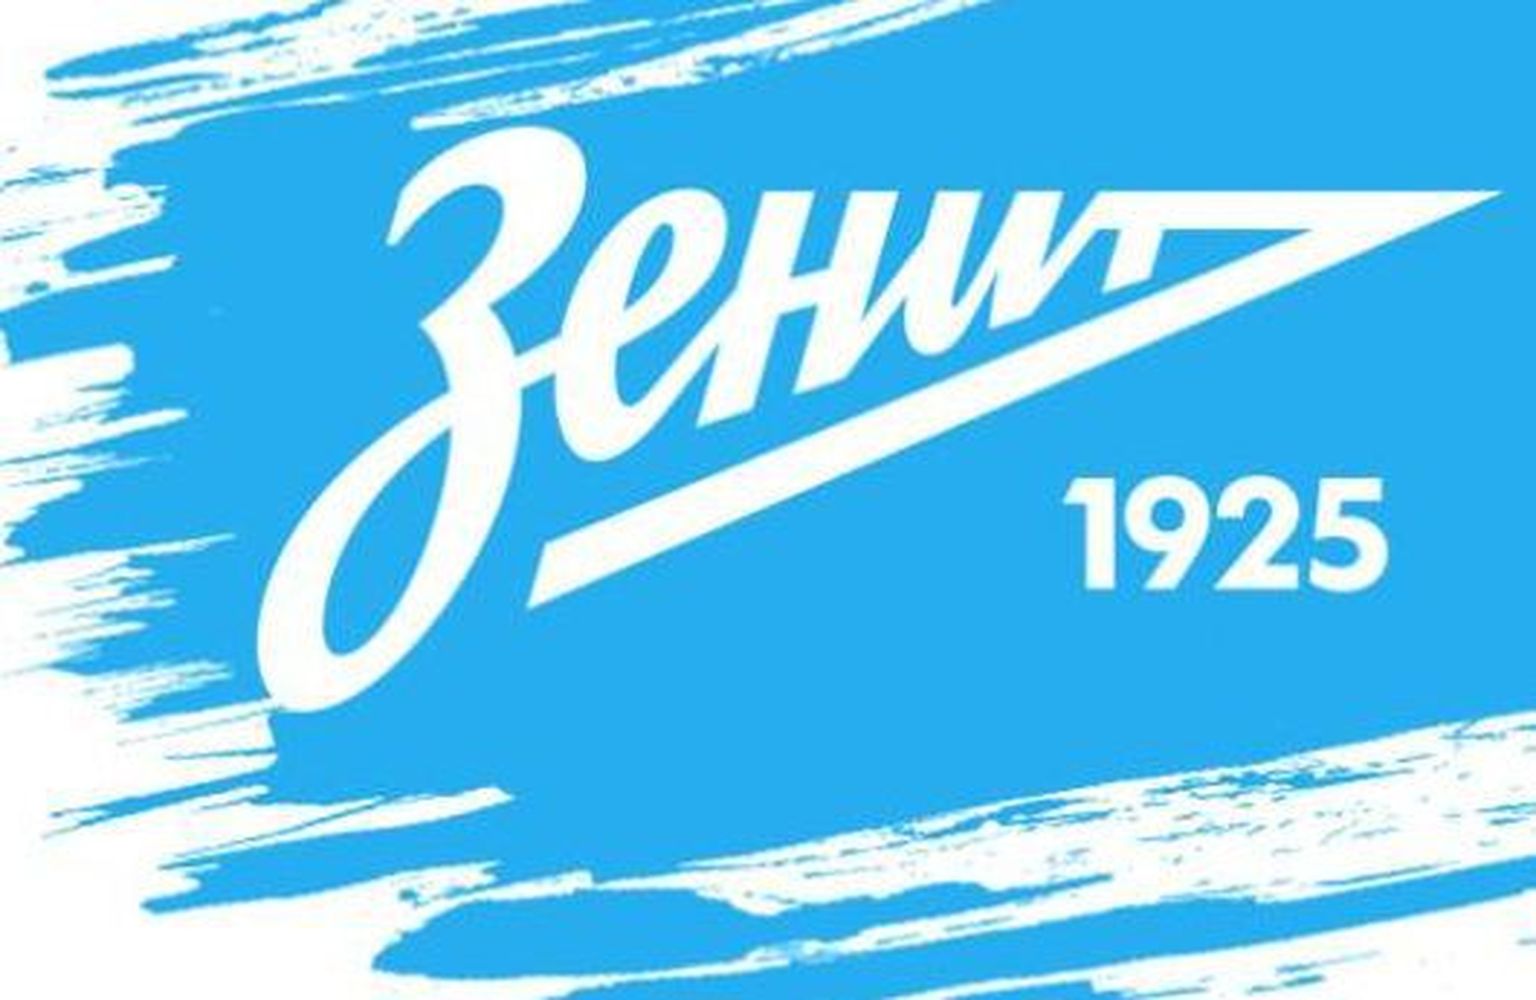 Обновленная эмблема клуба "Зенит".